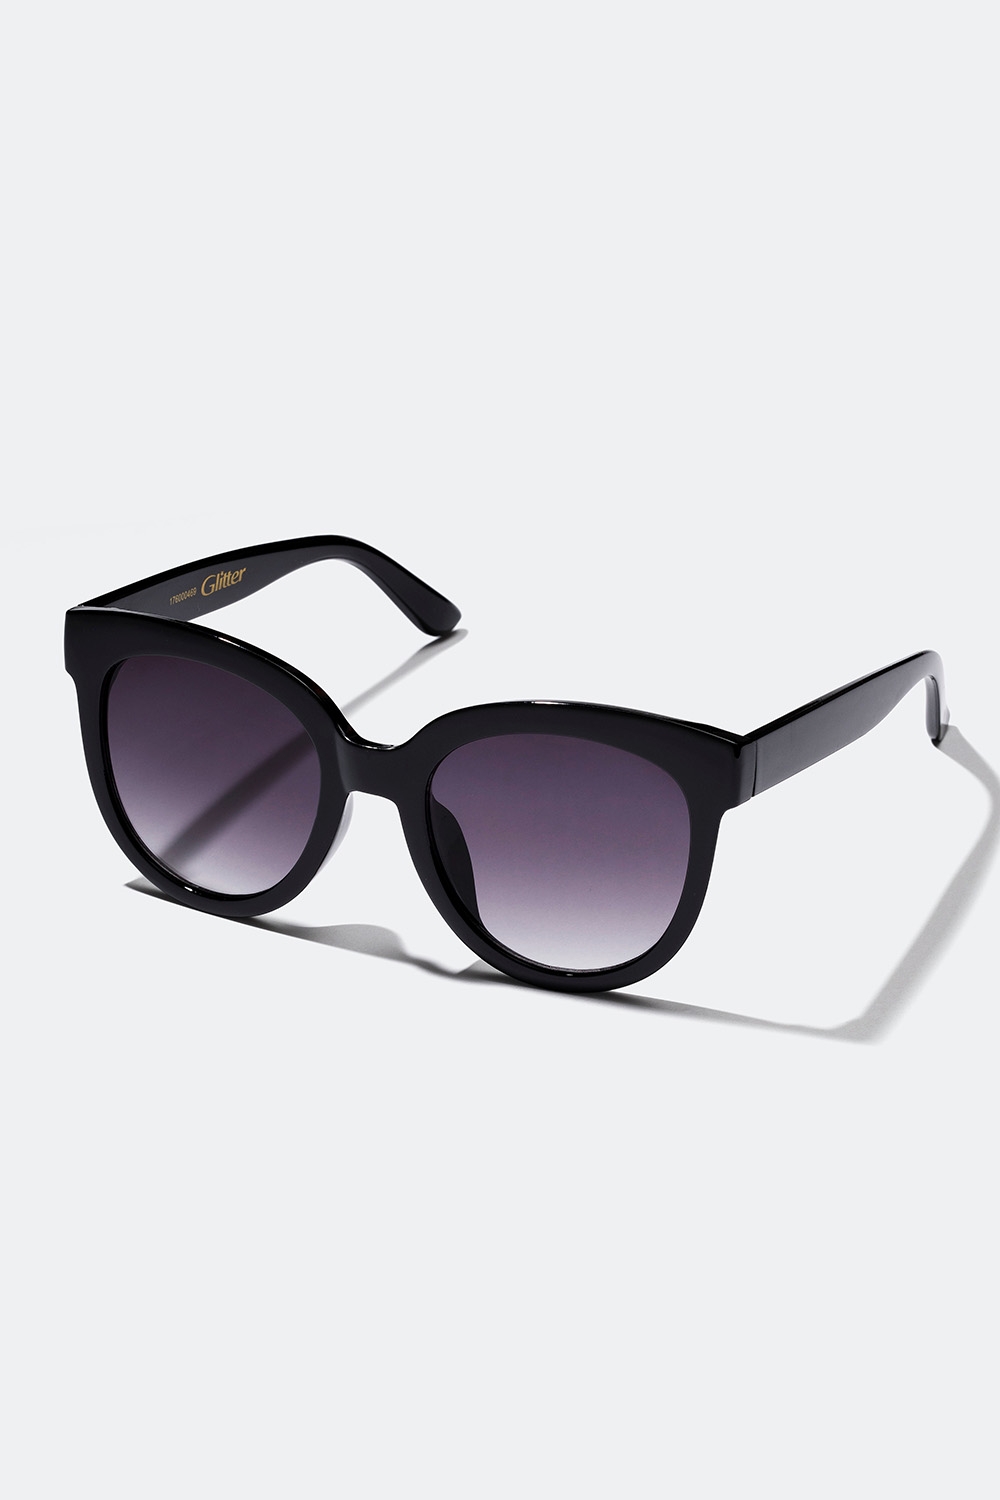 Svarta solglasögon med rundade bågar i gruppen Accessoarer / Solglasögon hos Glitter (176000469000)